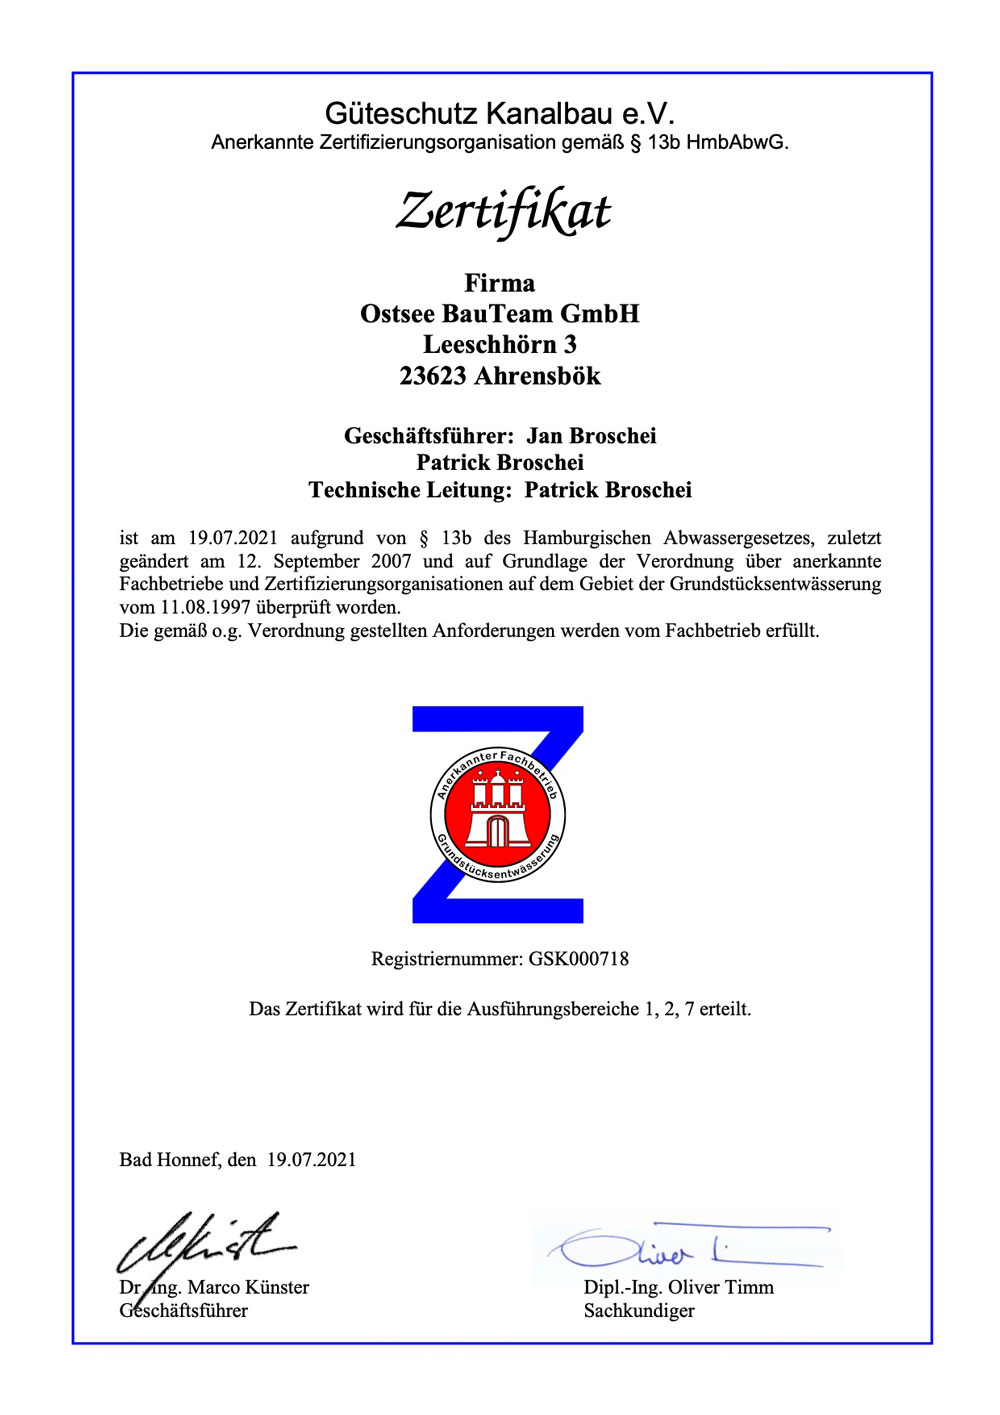 Zertifikat – Güteschutz Kanalbau e. V.